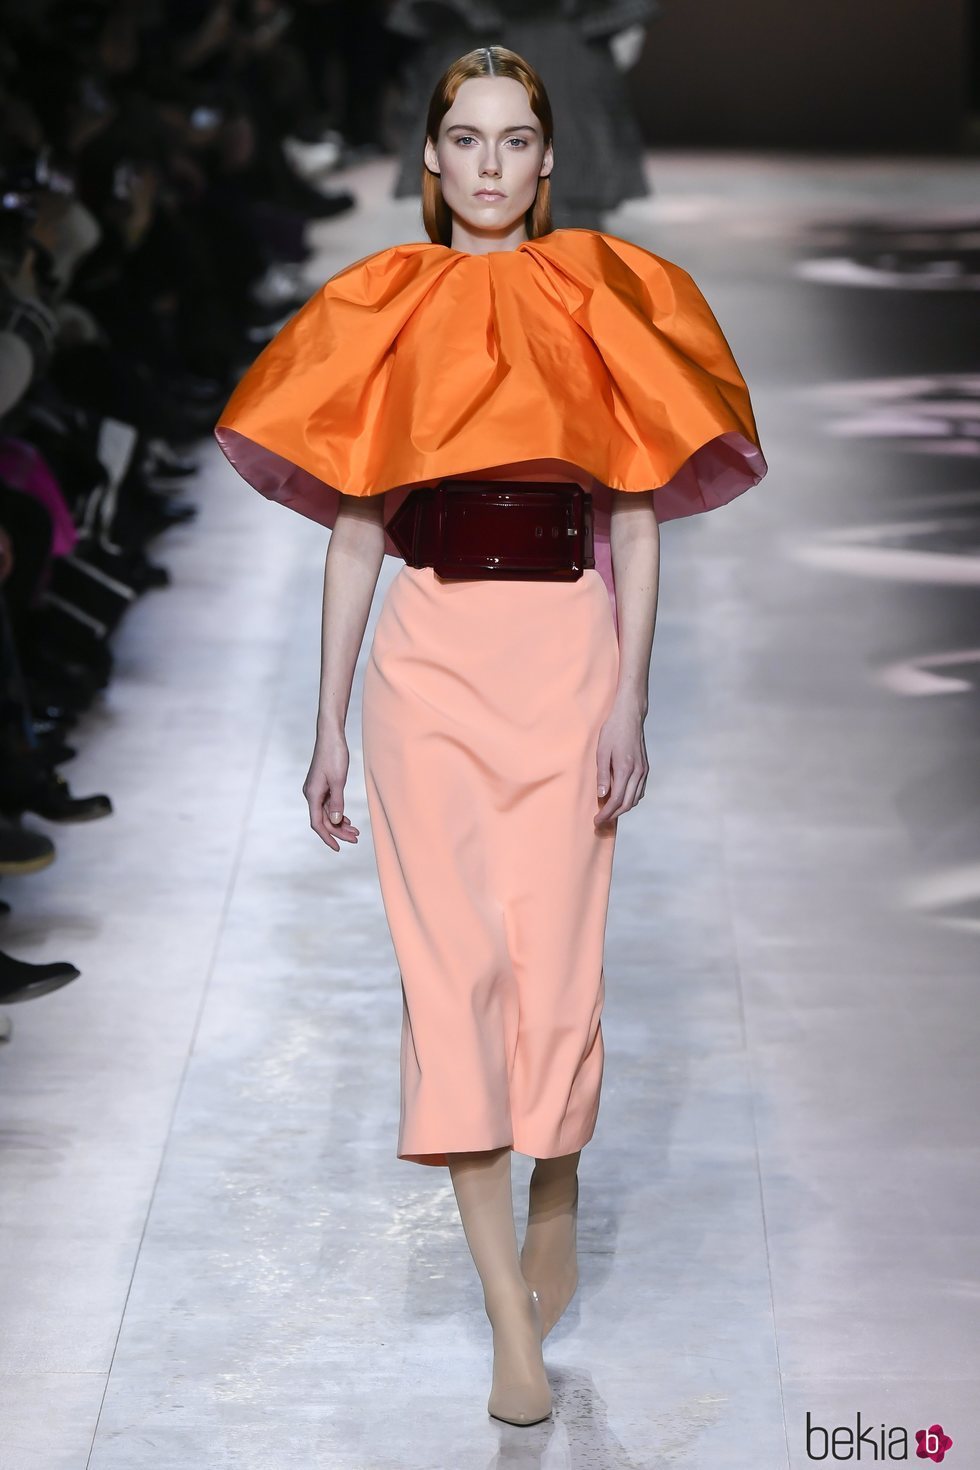 Vestido coral  del desfile de Alta Costura 2020 de Givenchy